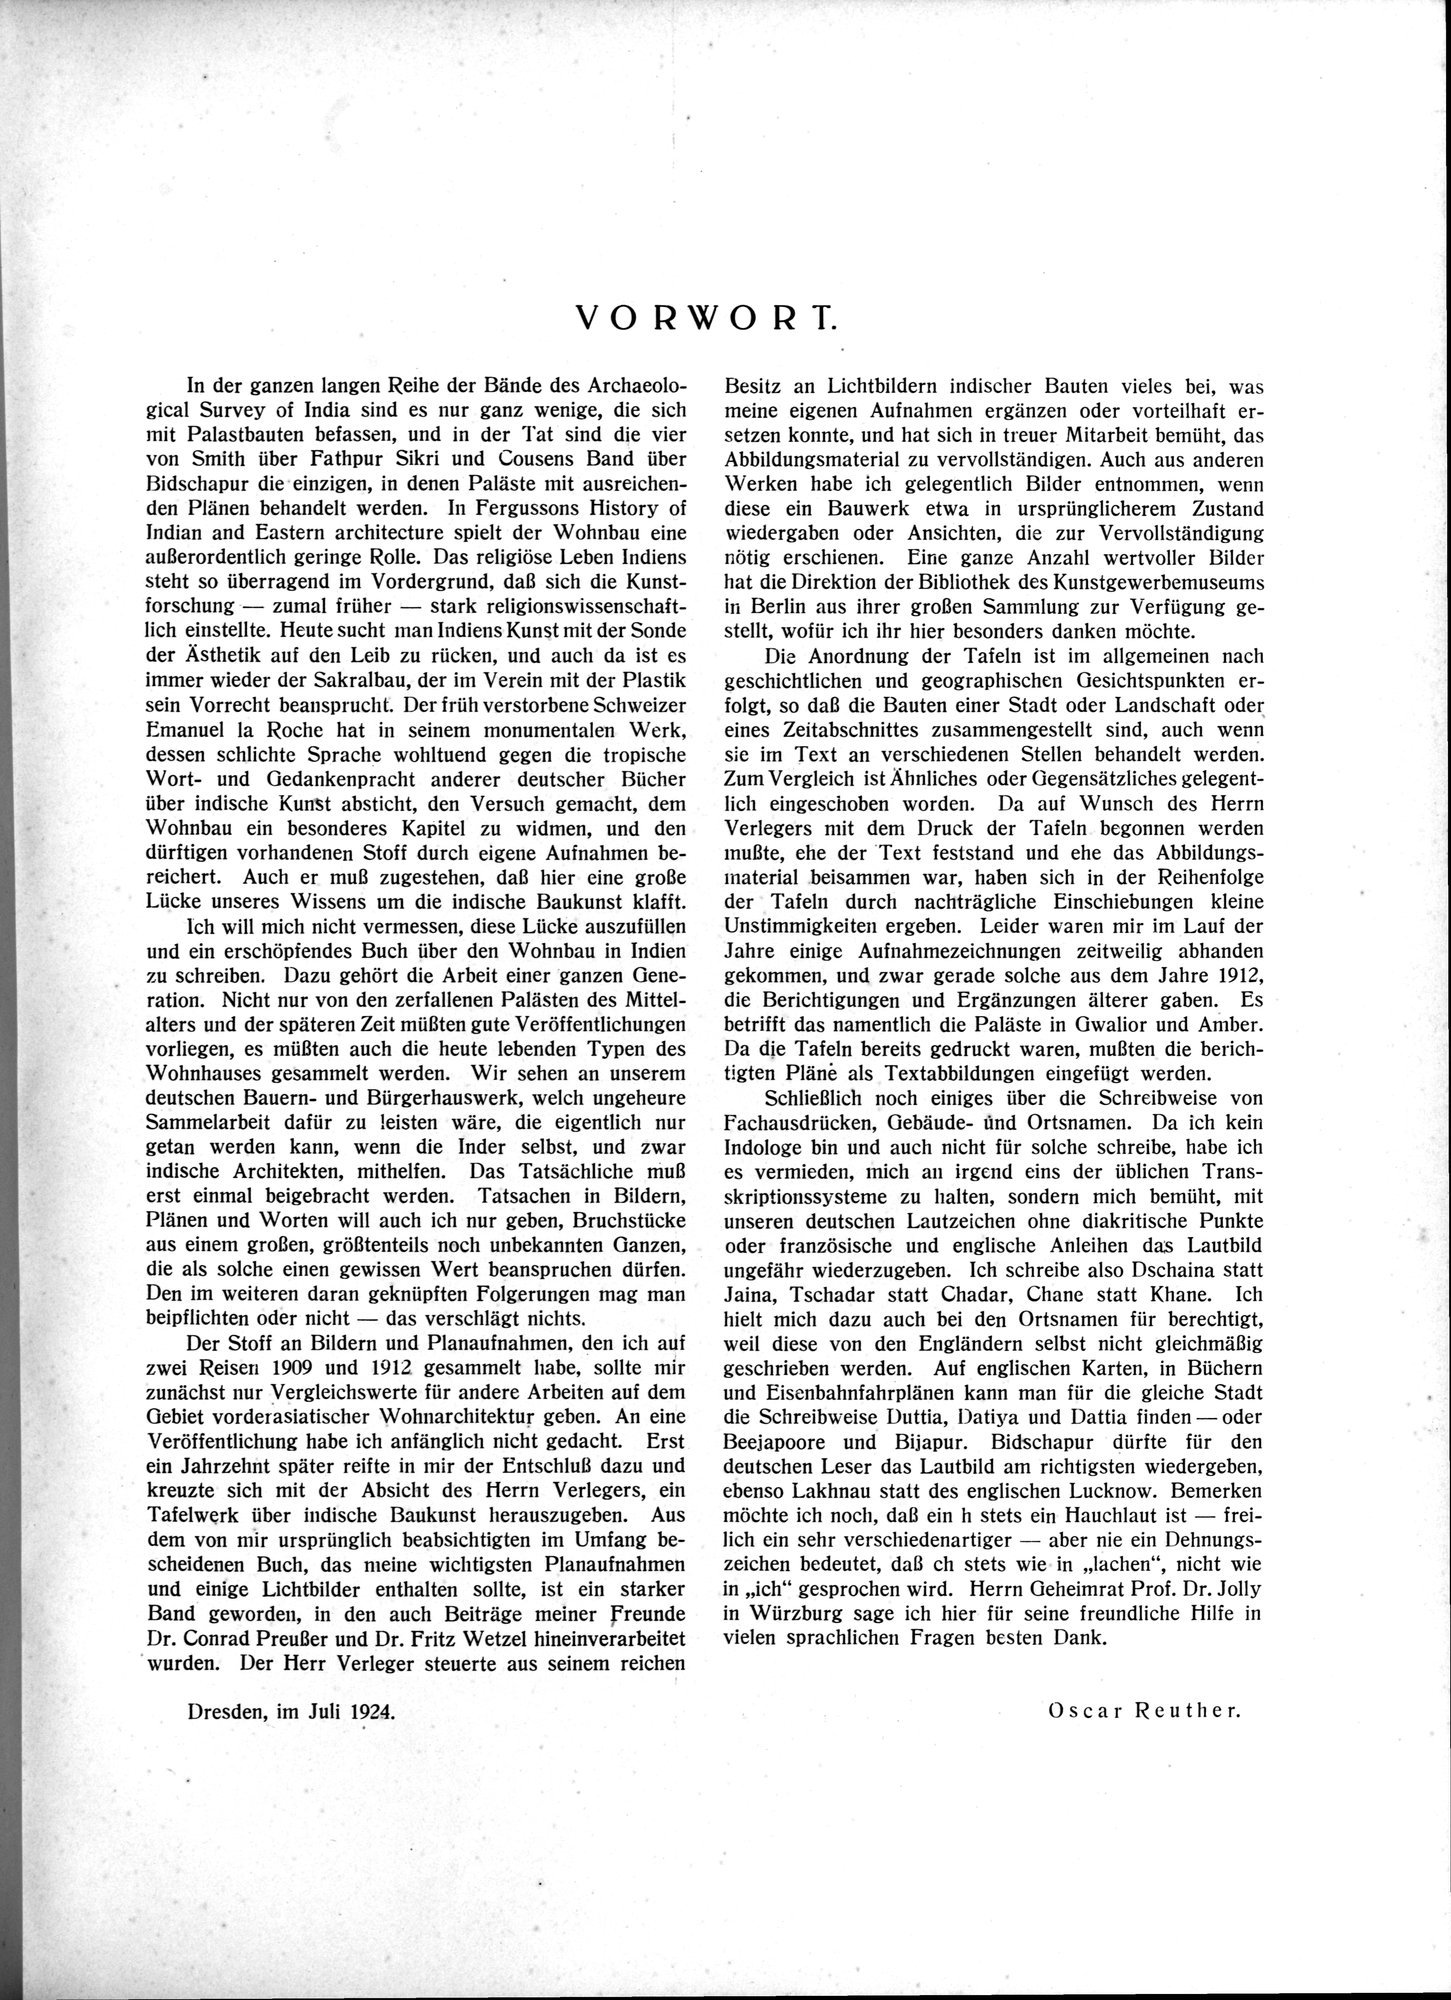 Indische Palaste und Wohnhauser : vol.1 / Page 9 (Grayscale High Resolution Image)